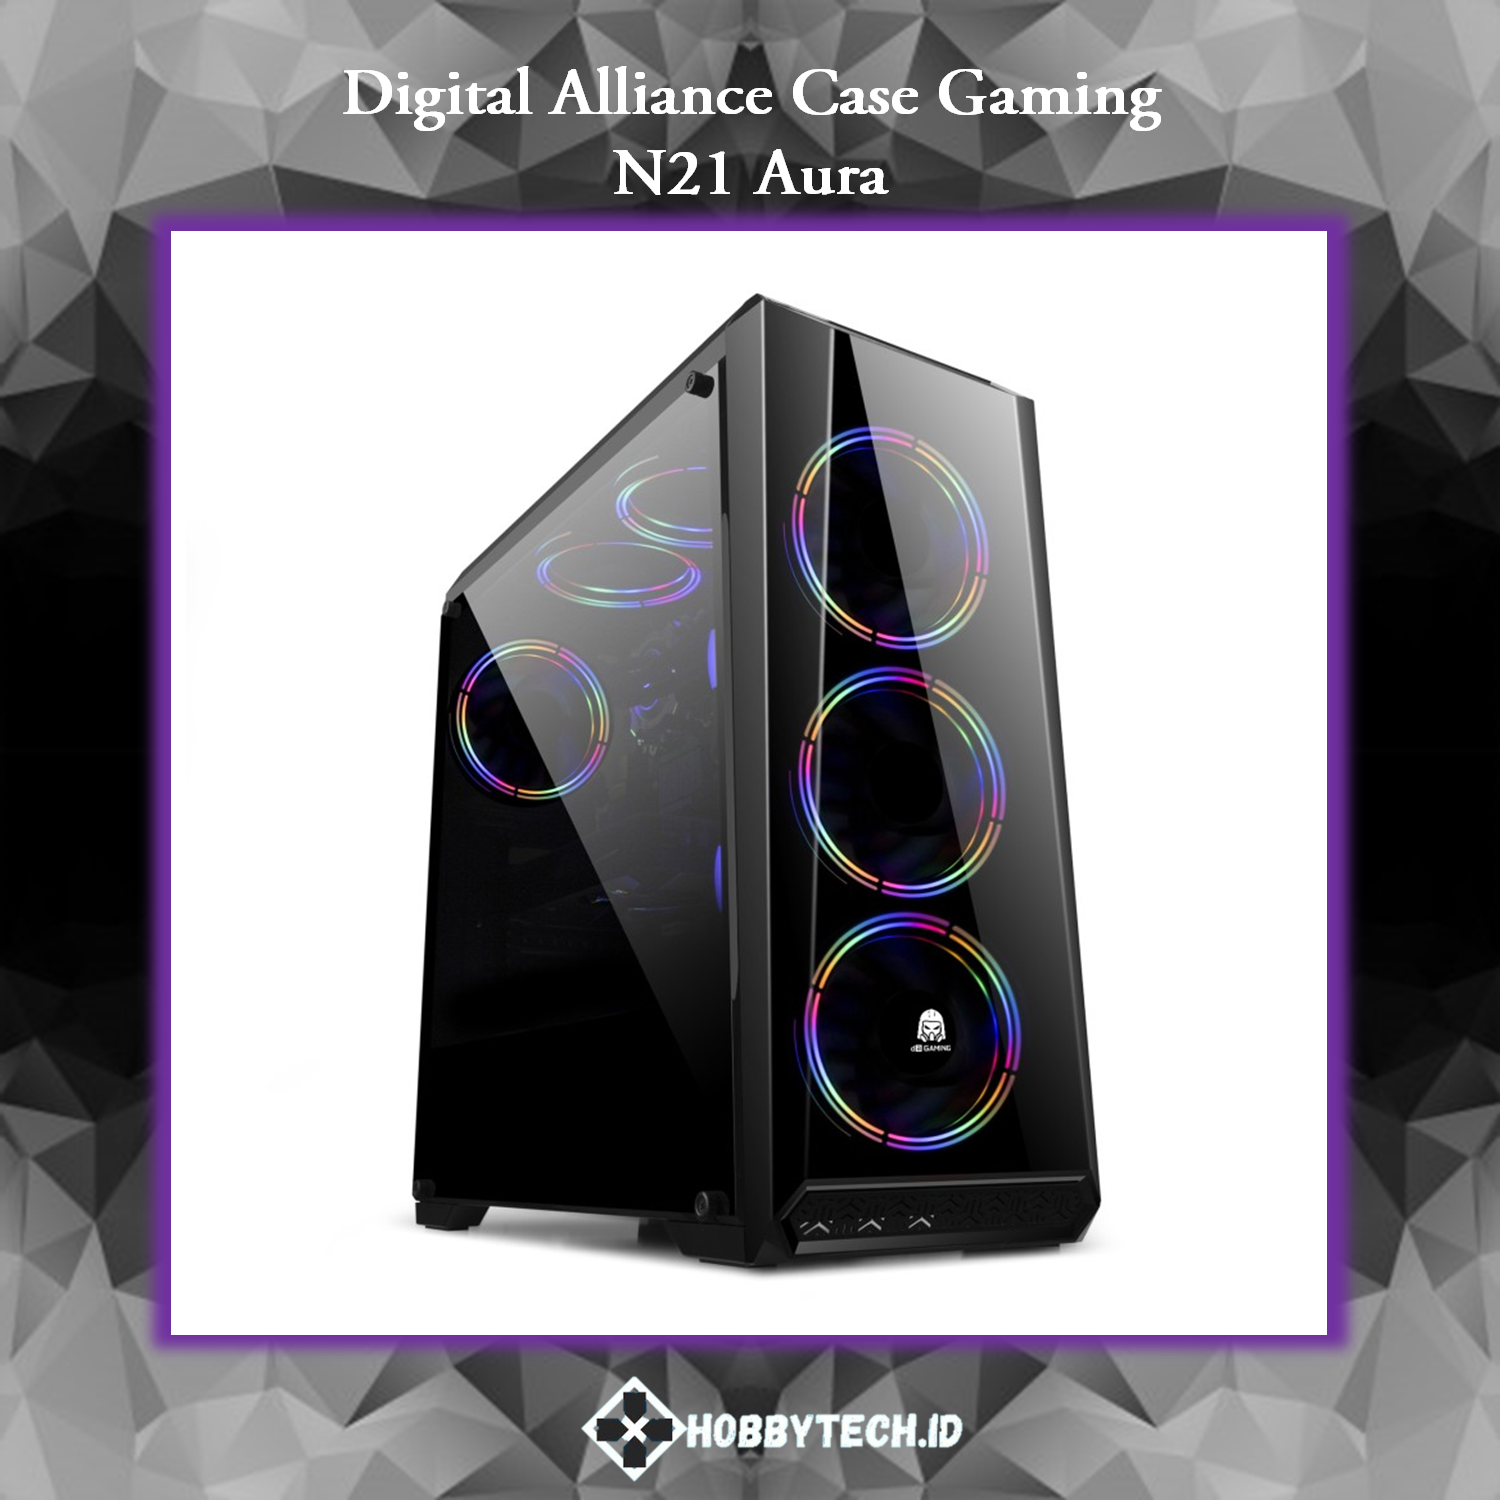 Digital Alliance Gaming Case N21 Aura